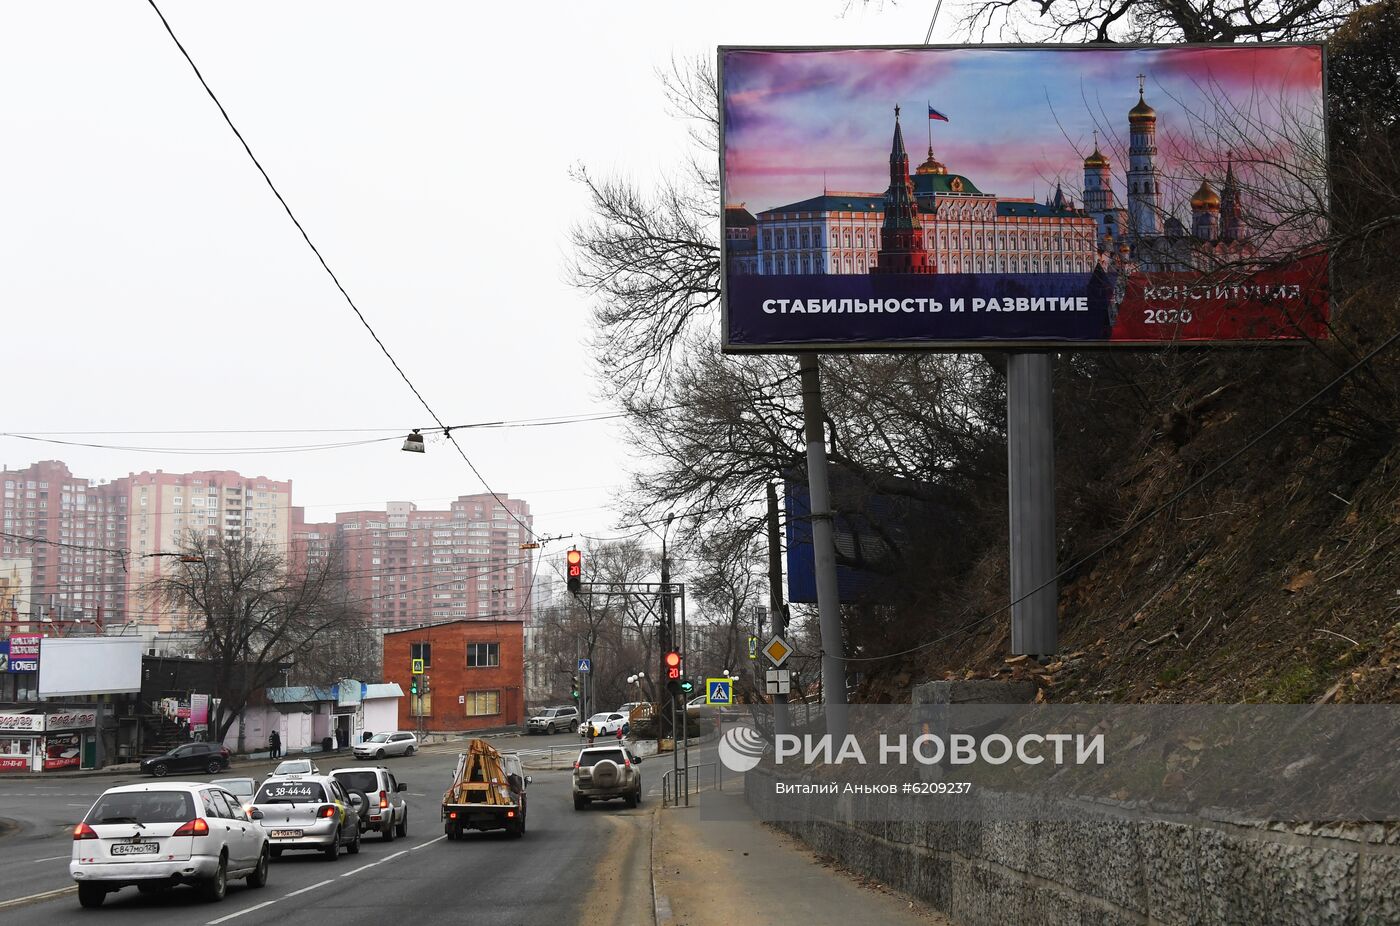 Информационные плакаты к голосованию по поправкам в Конституцию РФ